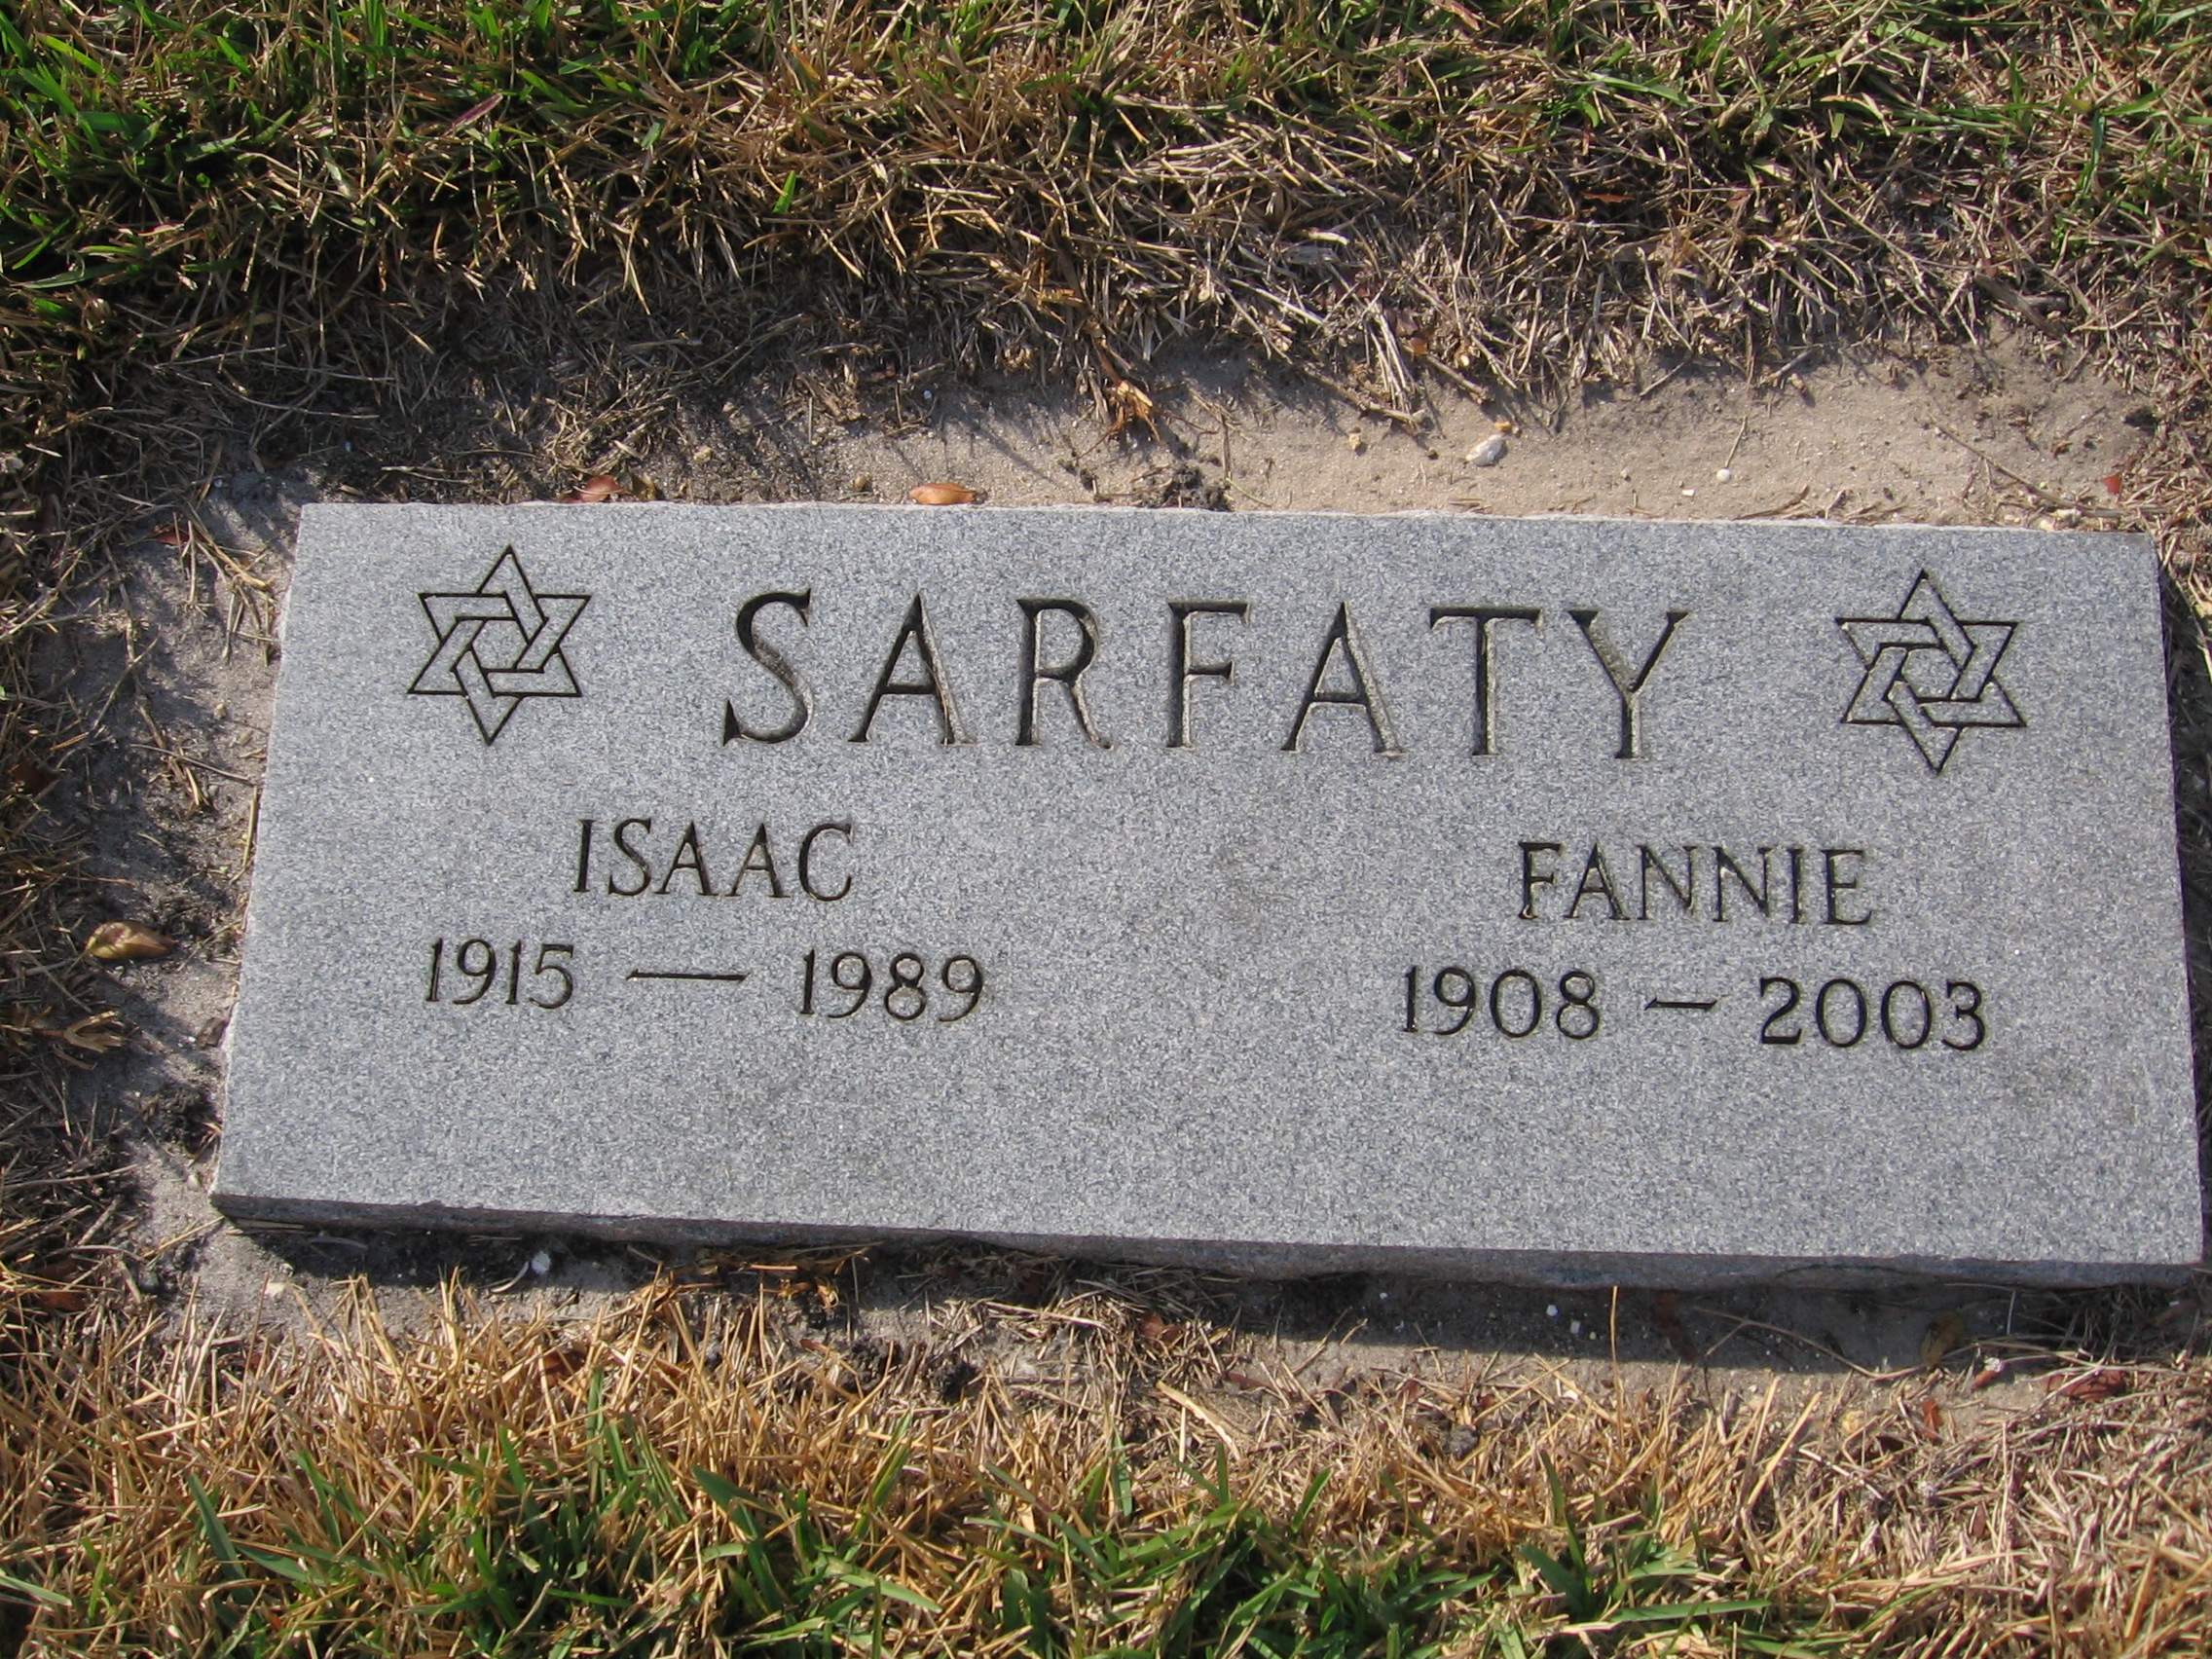 Fannie Sarfaty